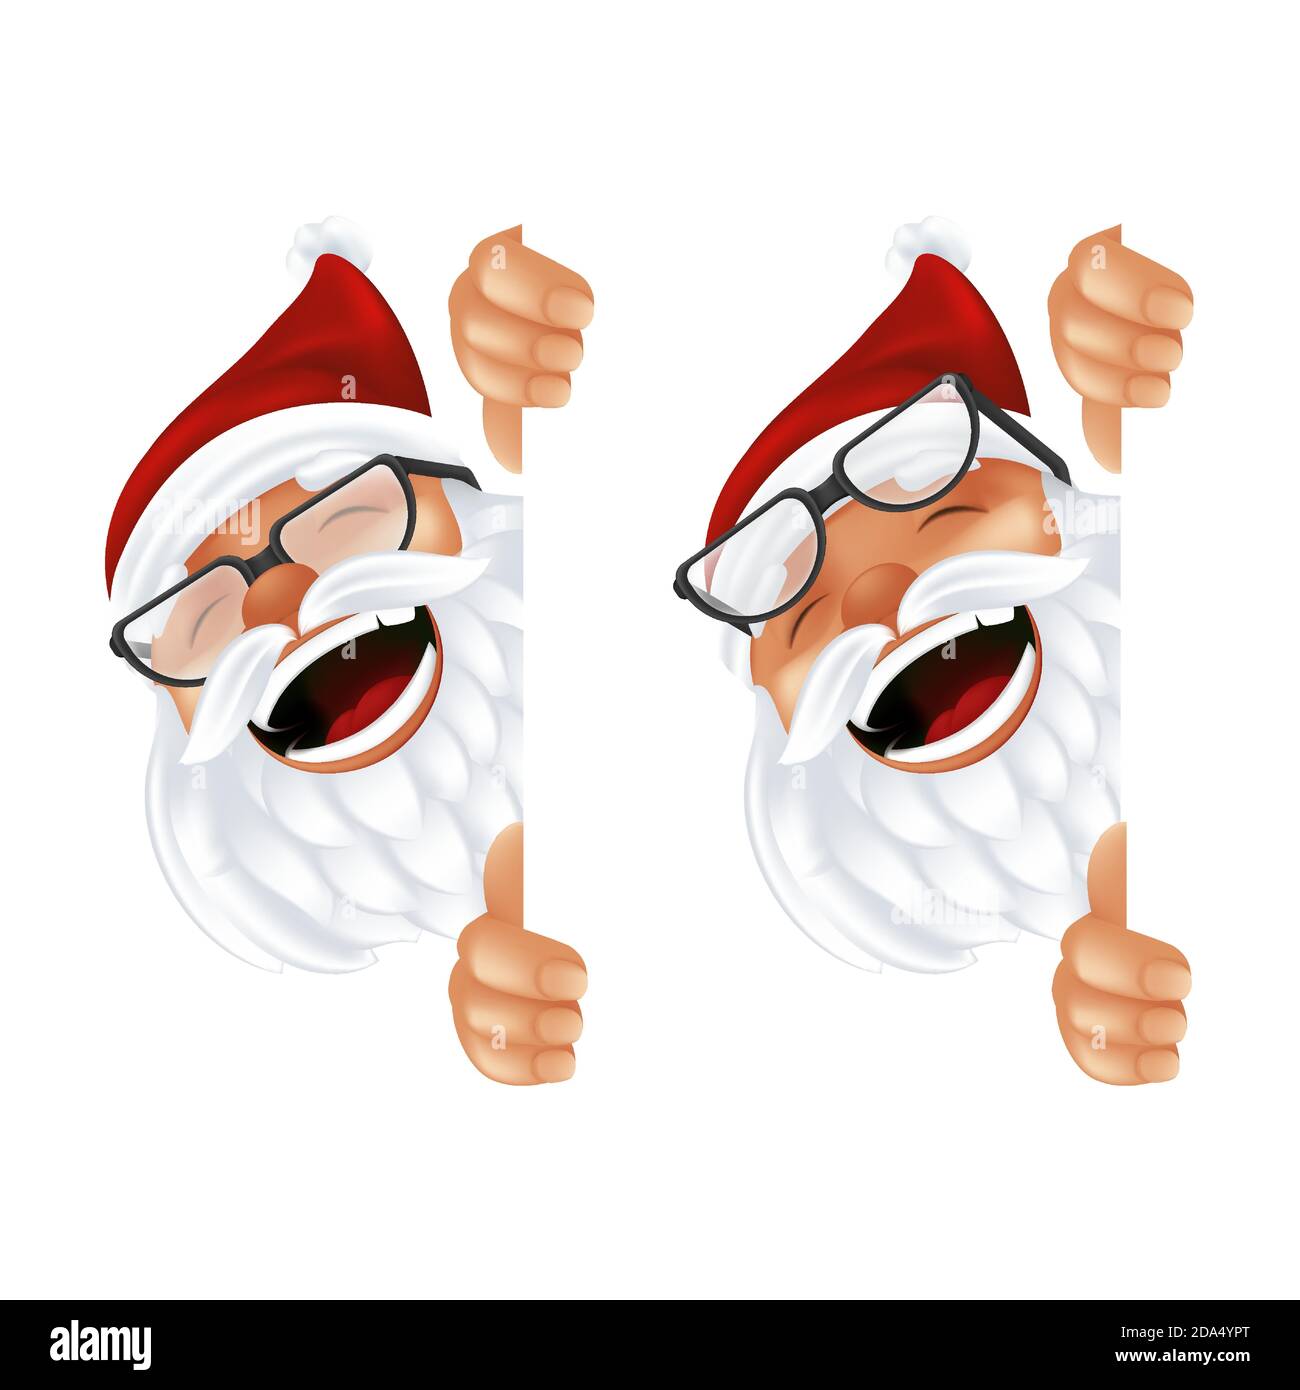 Lustige Cartoon Weihnachtsmann in einem roten Hut und Brille. Lachend und lächelnd Weihnachtsfigur in Tracht spähend von hinten die vertikale c Stock Vektor